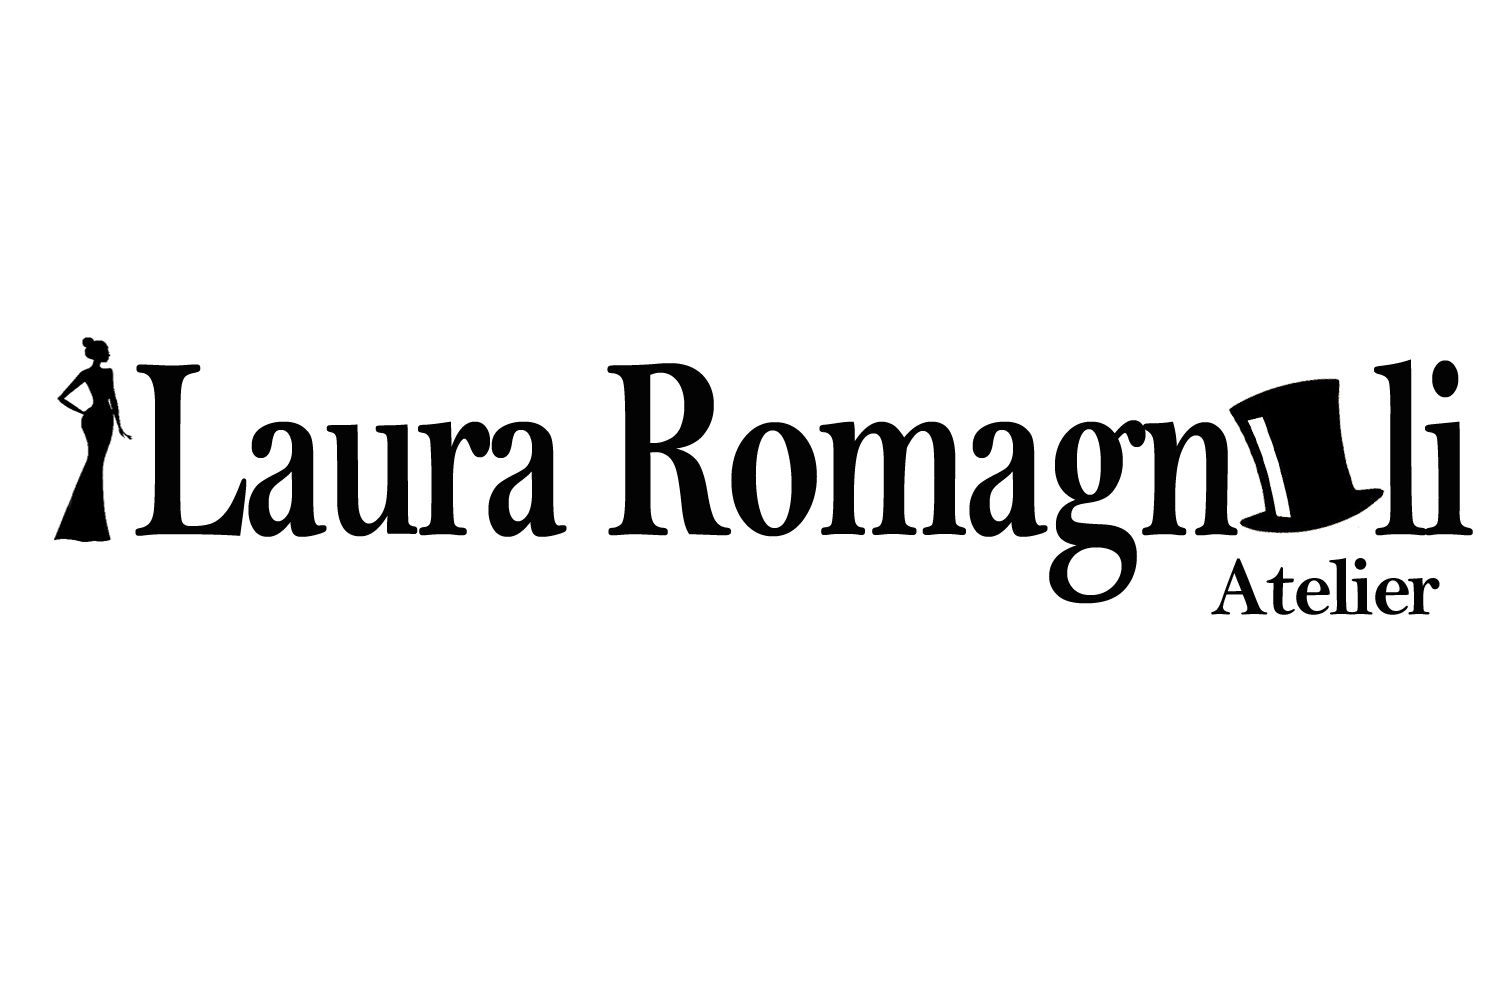 LauraRomagnoli